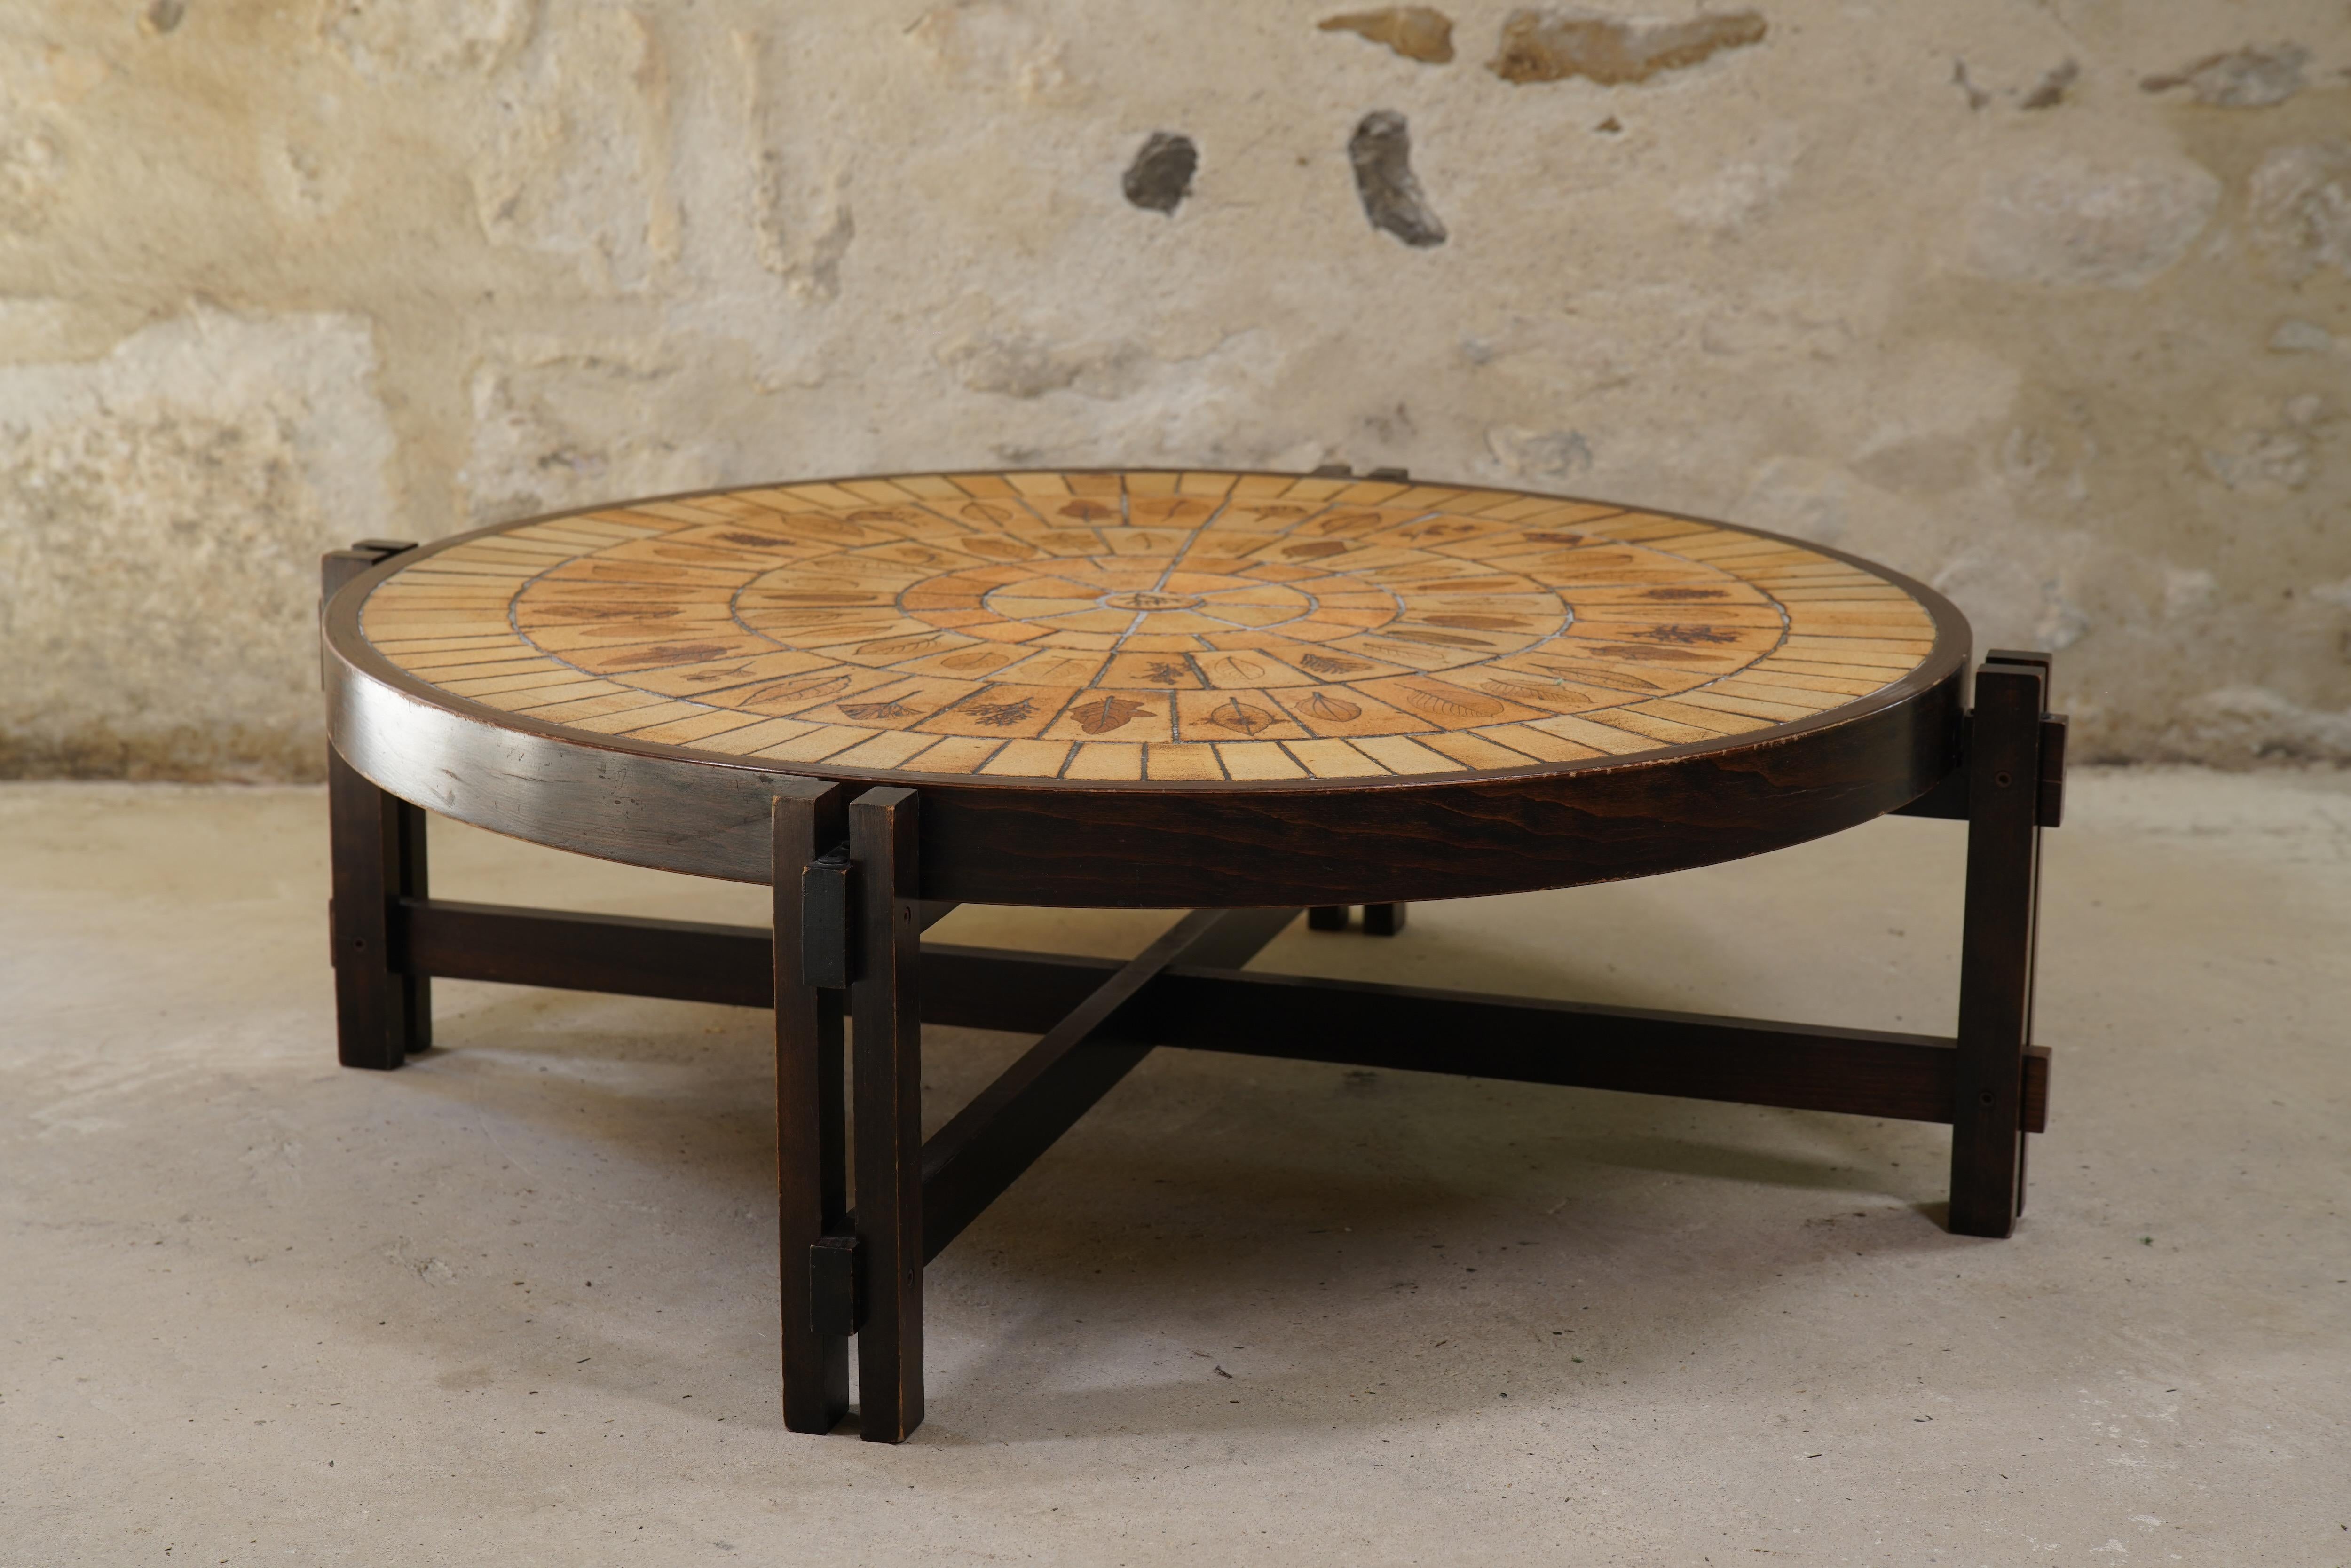 Ravissante table basse en céramique Roger Capron avec des carreaux de Garrigue de France, vers les années 1960.

Les carreaux de Garrigue, fabriqués à la main, sont issus d'une technique où de vraies feuilles sont pressées dans l'argile et se